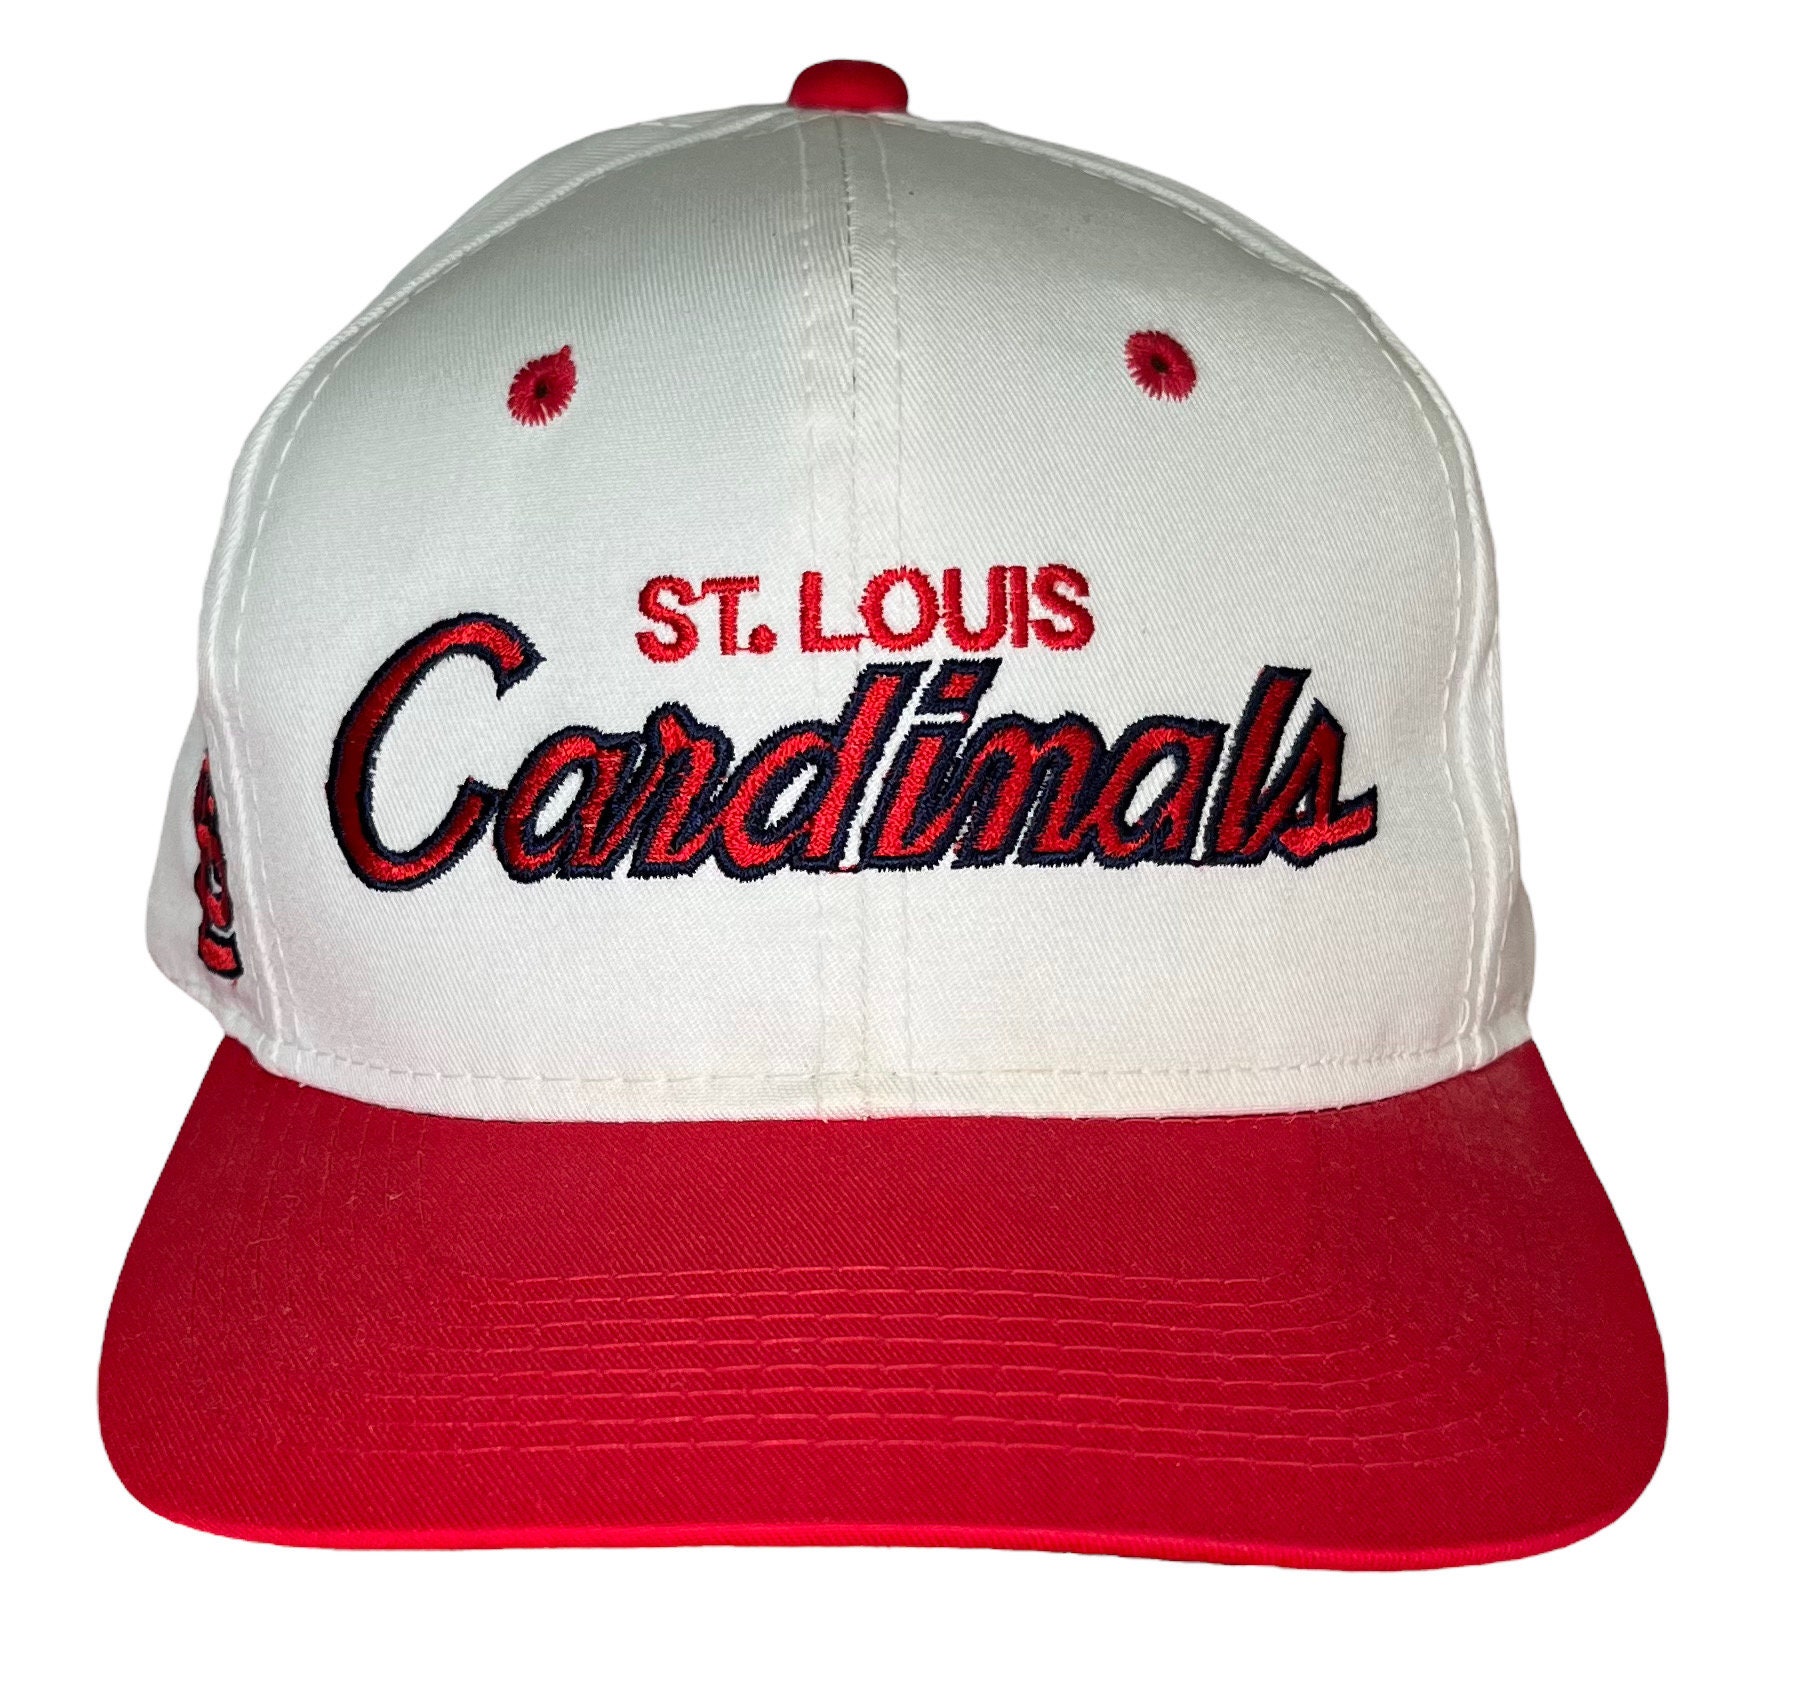 St. Louis Cardinals Home/Away Men's Sport Cut Jersey LG